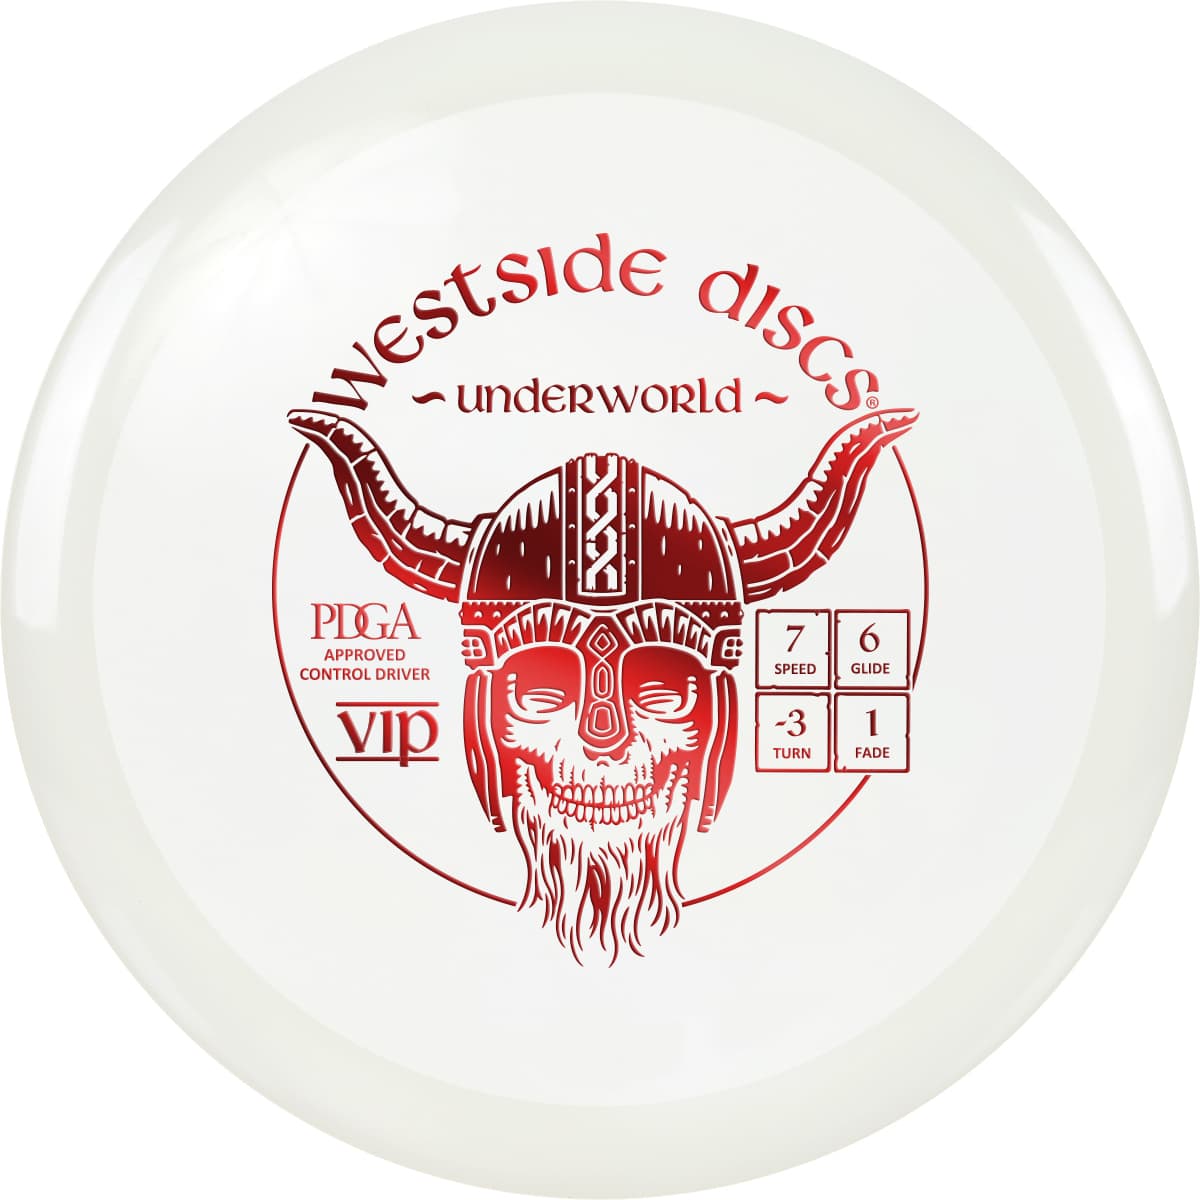 Westside Discs Vip Driver Underworld, 173g+ White